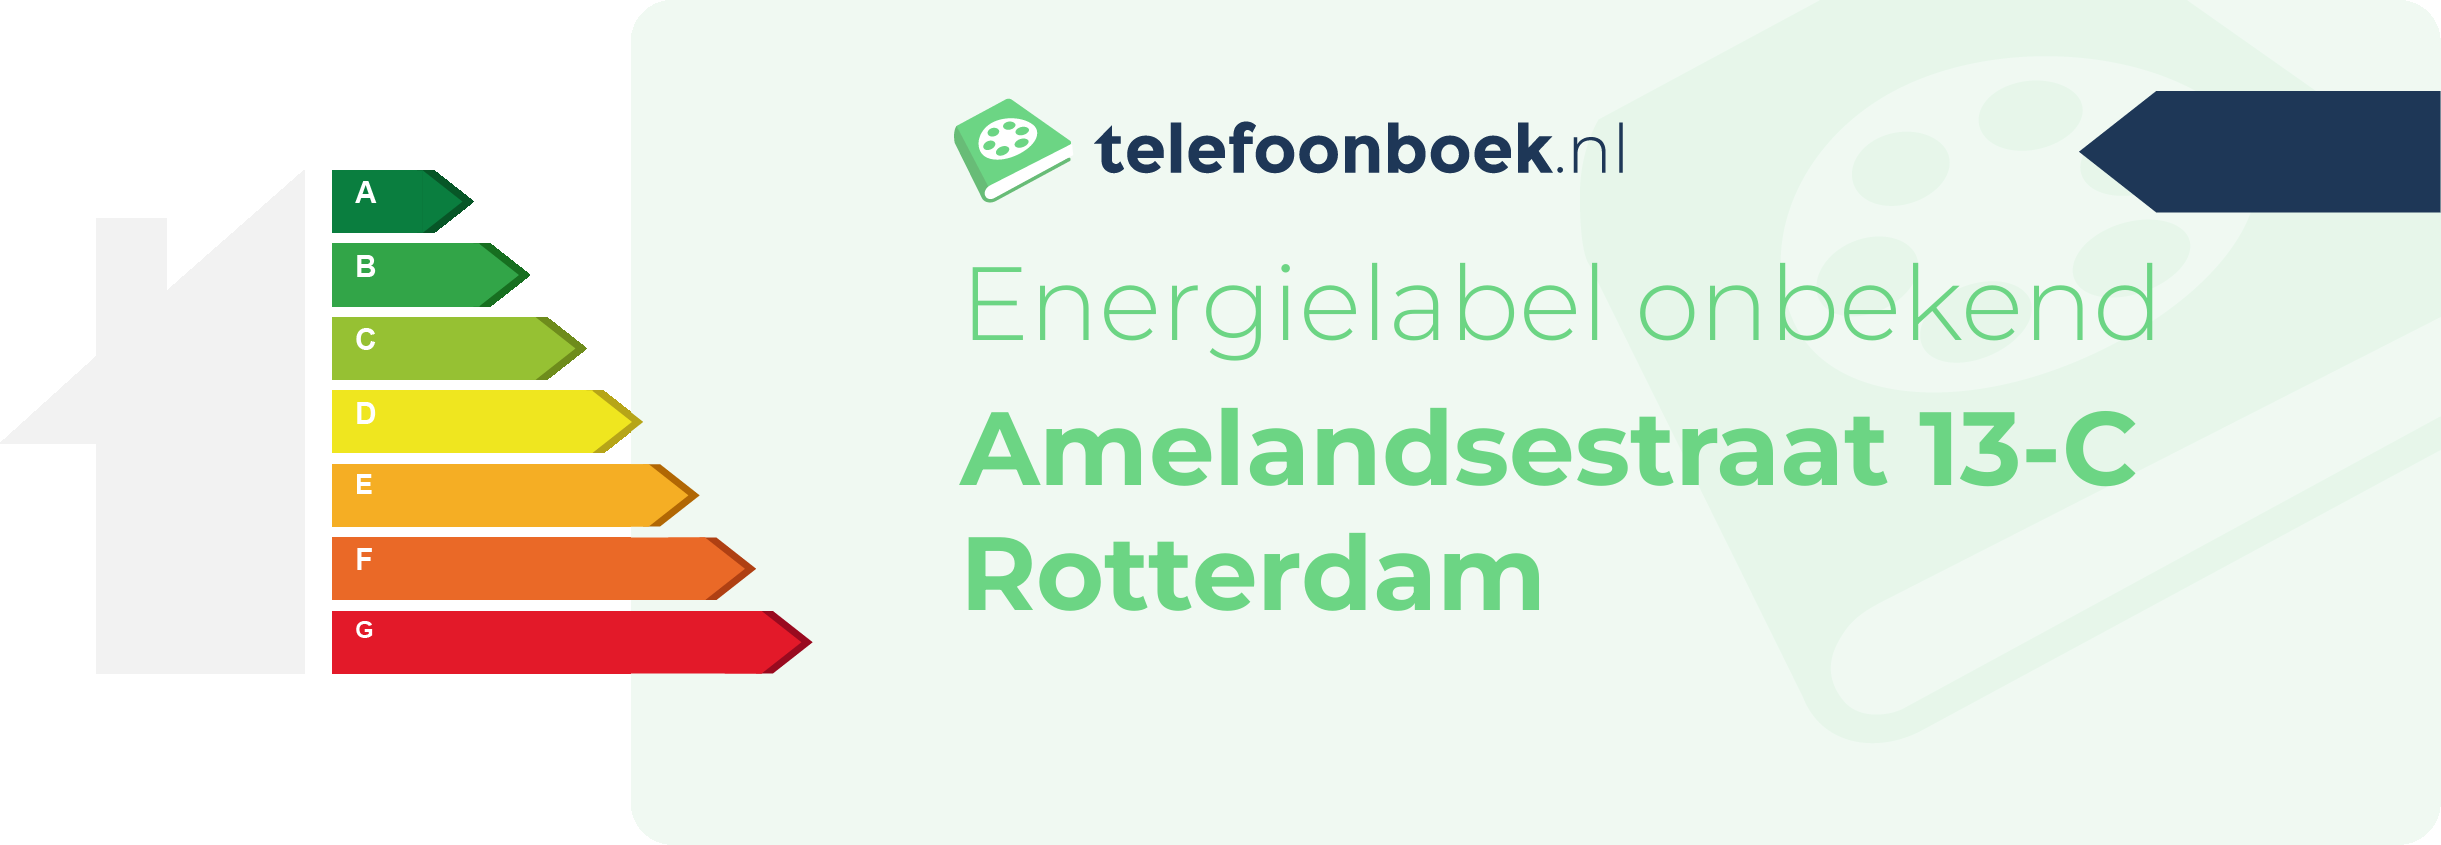 Energielabel Amelandsestraat 13-C Rotterdam